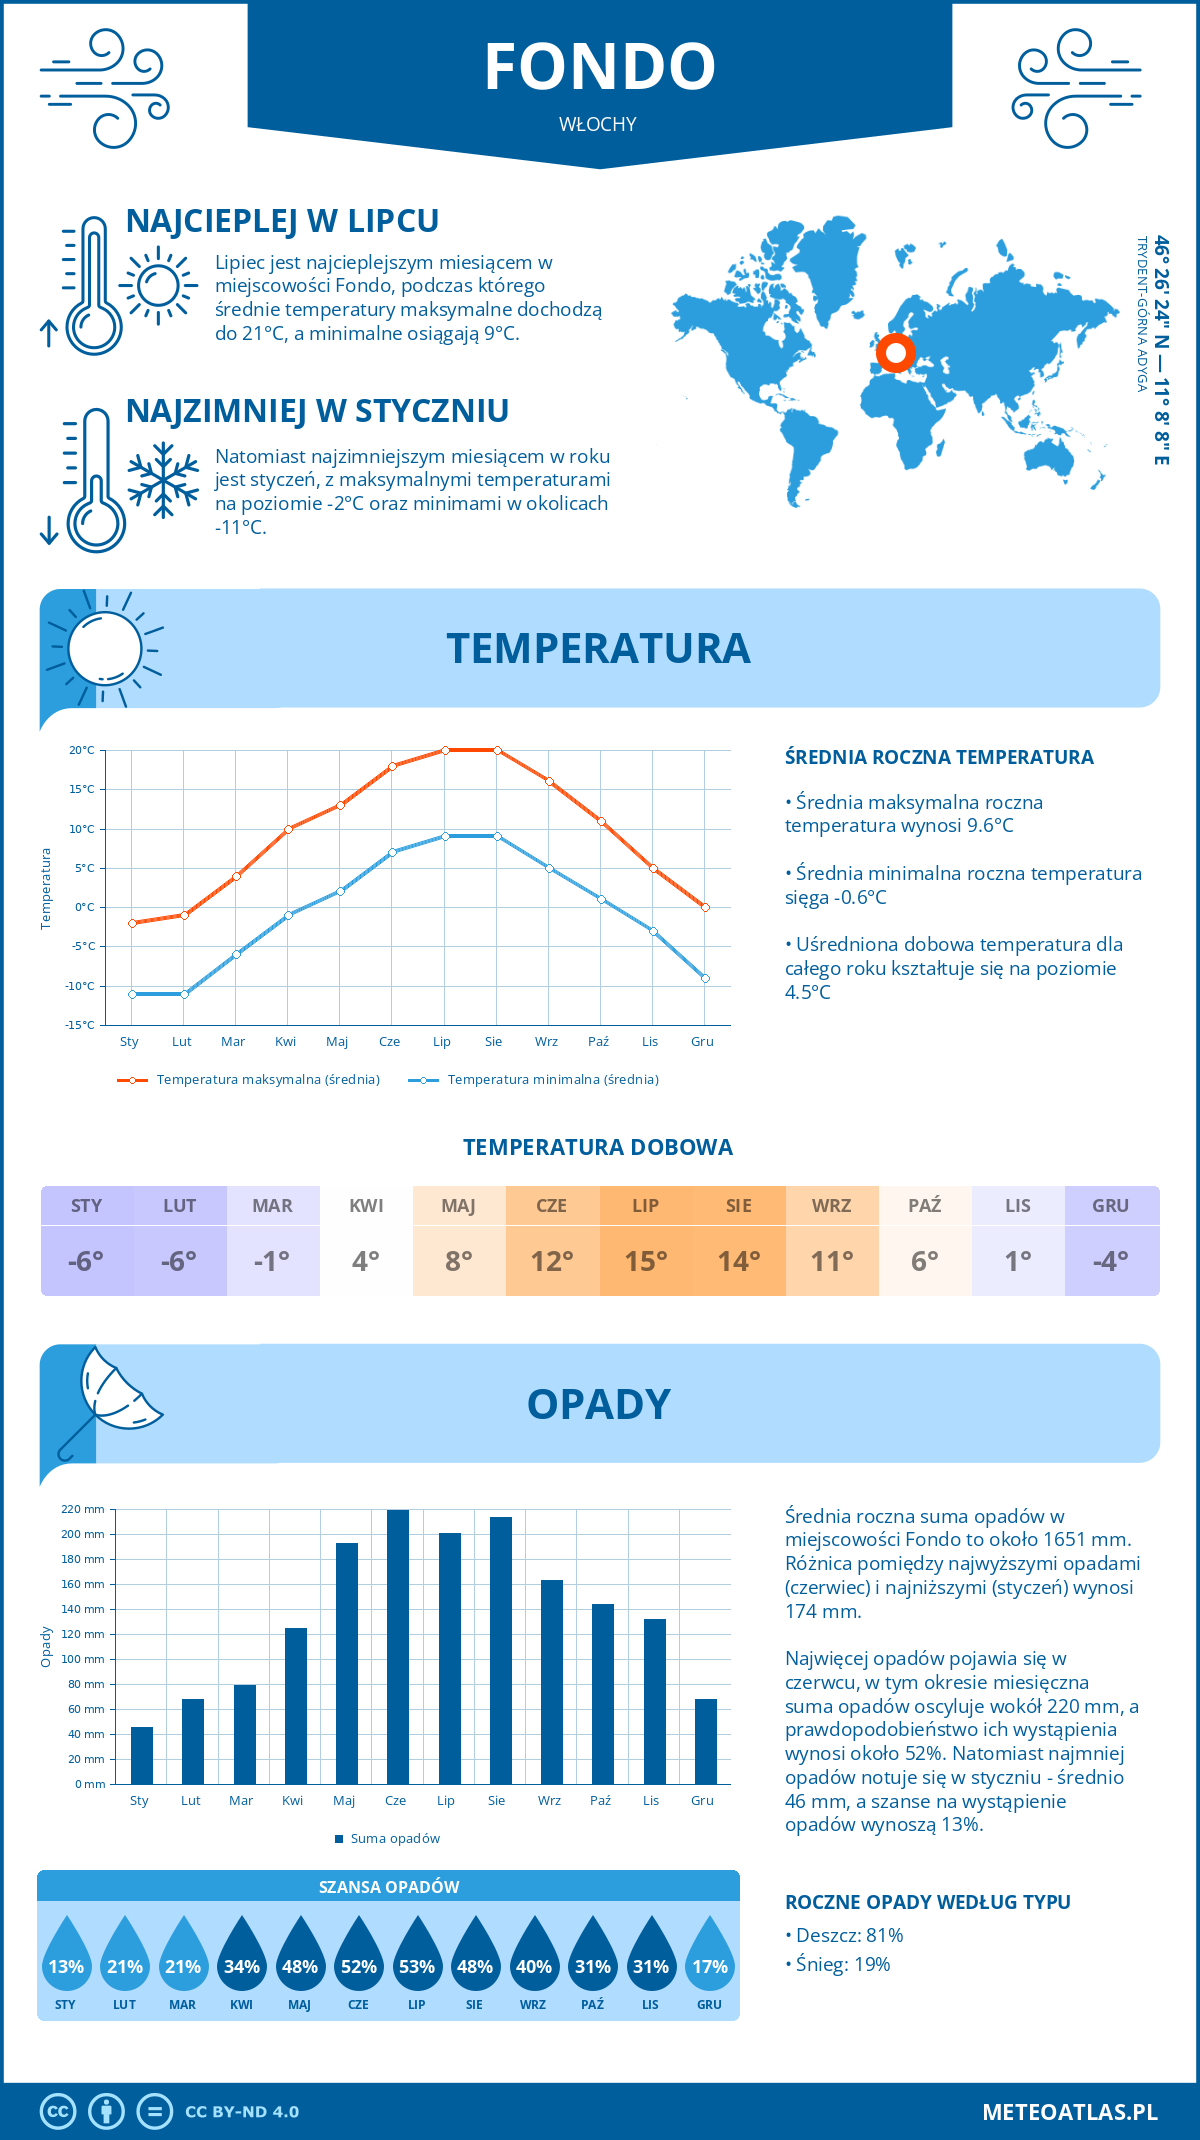 Pogoda Fondo (Włochy). Temperatura oraz opady.